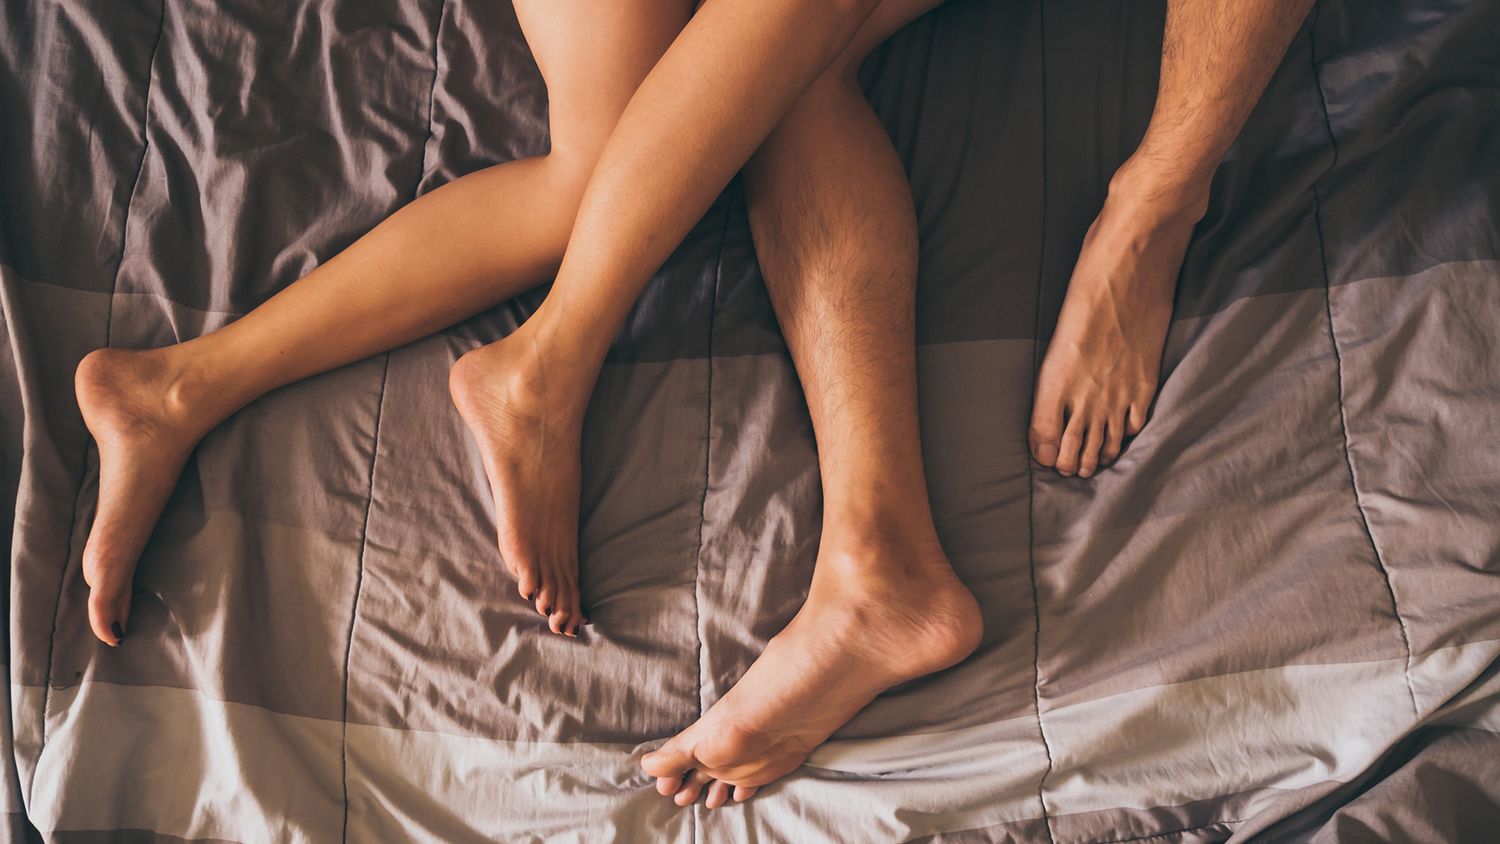 Az alvászavar csökkenti a szexuális teljesítményt? - Somnocenter